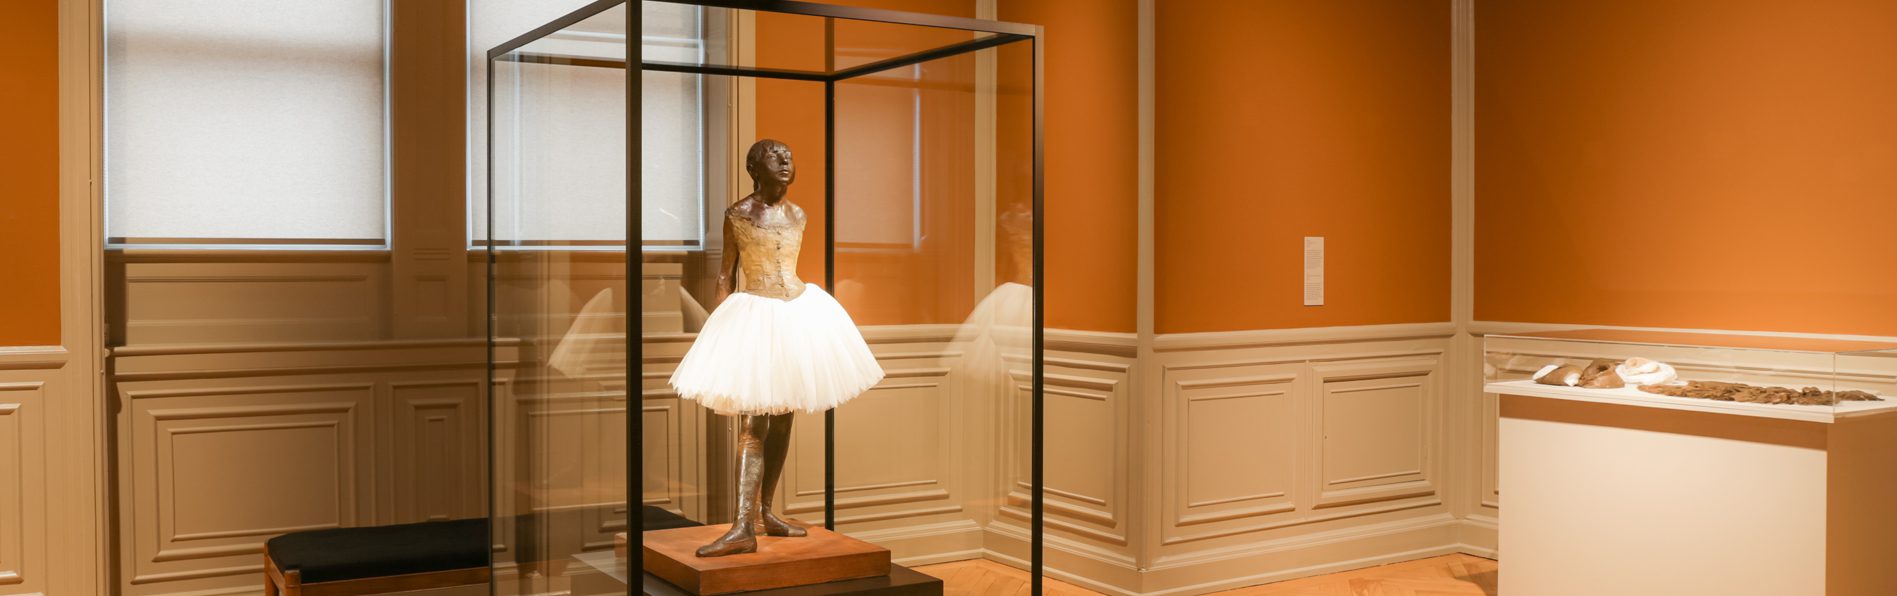 Edgar Degas' Lille Danserinde, 14 år